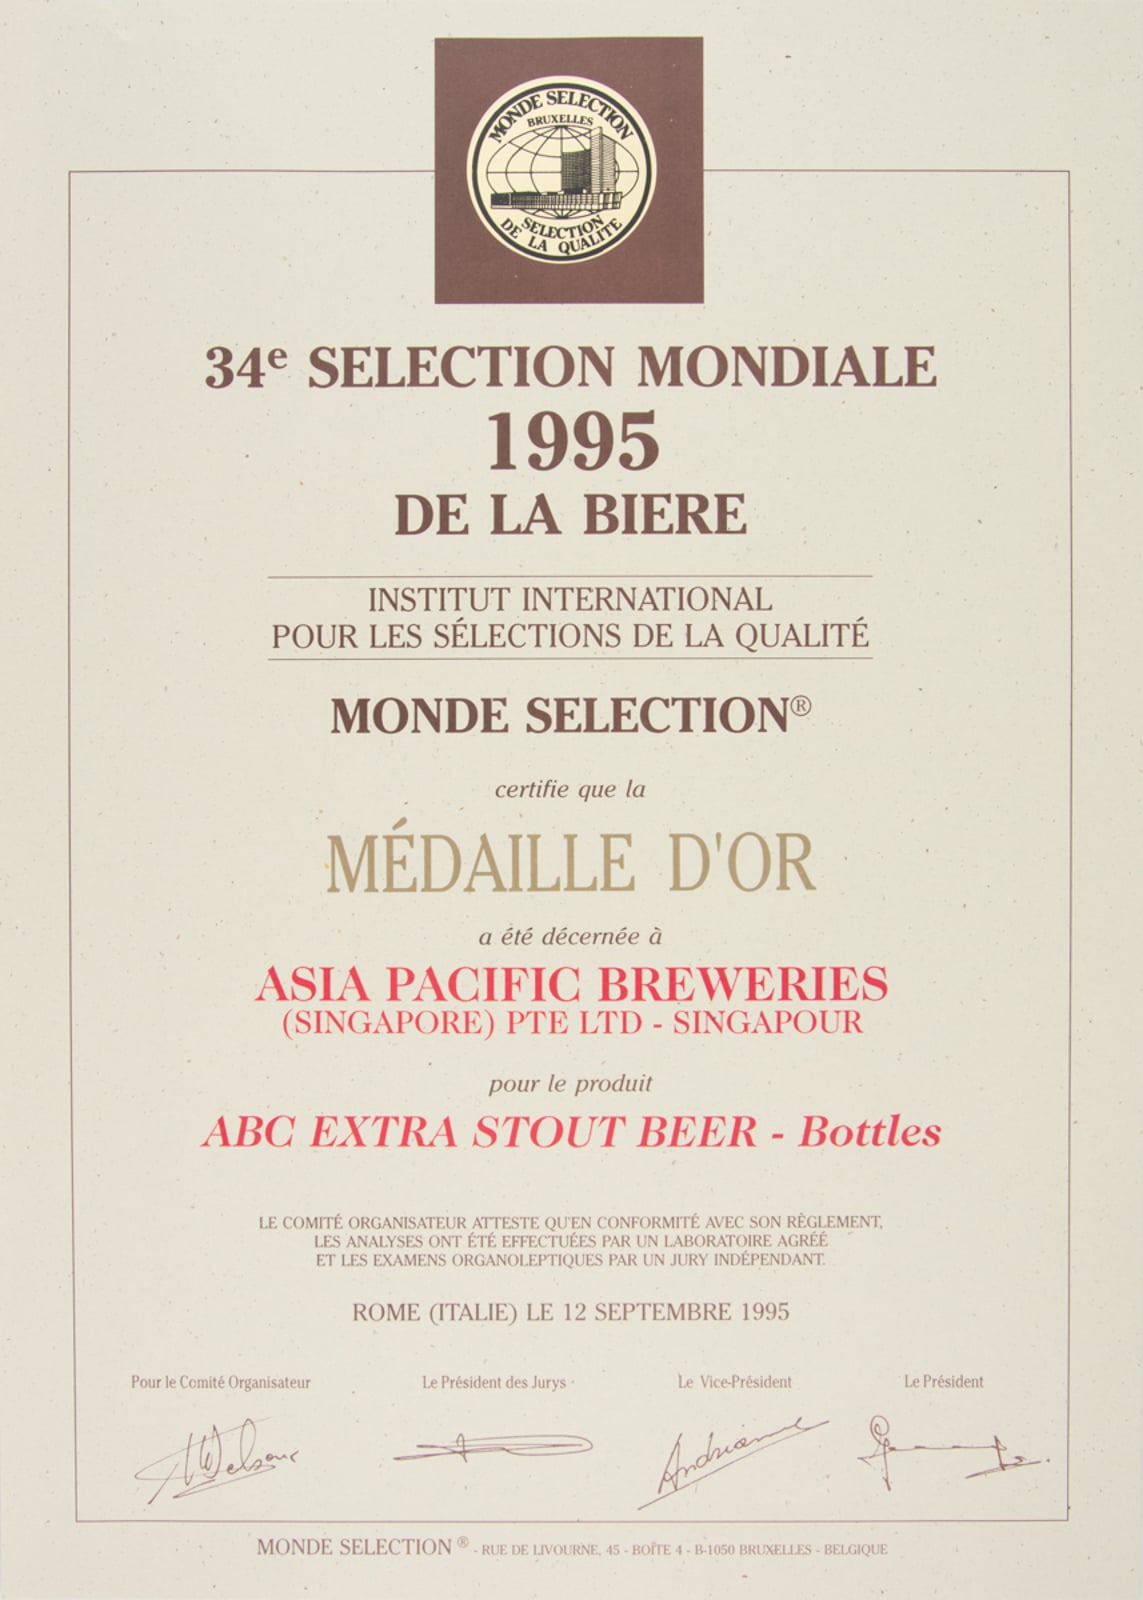 ABC Extra Stout Beer - Bottles - Médaille d'Or, Monde Sélection Certificate 1995